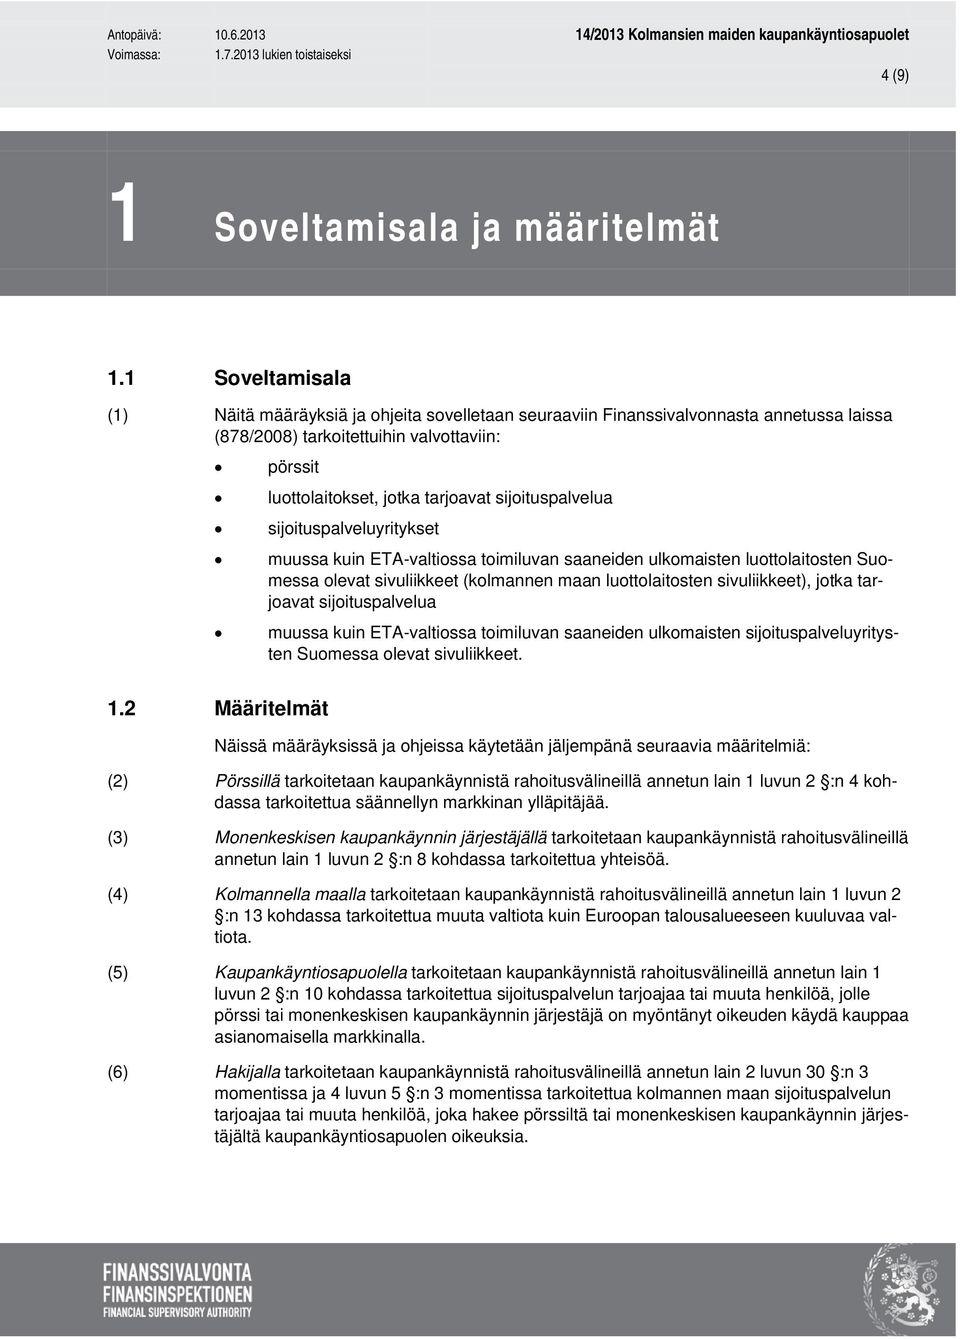 sijoituspalvelua sijoituspalveluyritykset muussa kuin ETA-valtiossa toimiluvan saaneiden ulkomaisten luottolaitosten Suomessa olevat sivuliikkeet (kolmannen maan luottolaitosten sivuliikkeet), jotka